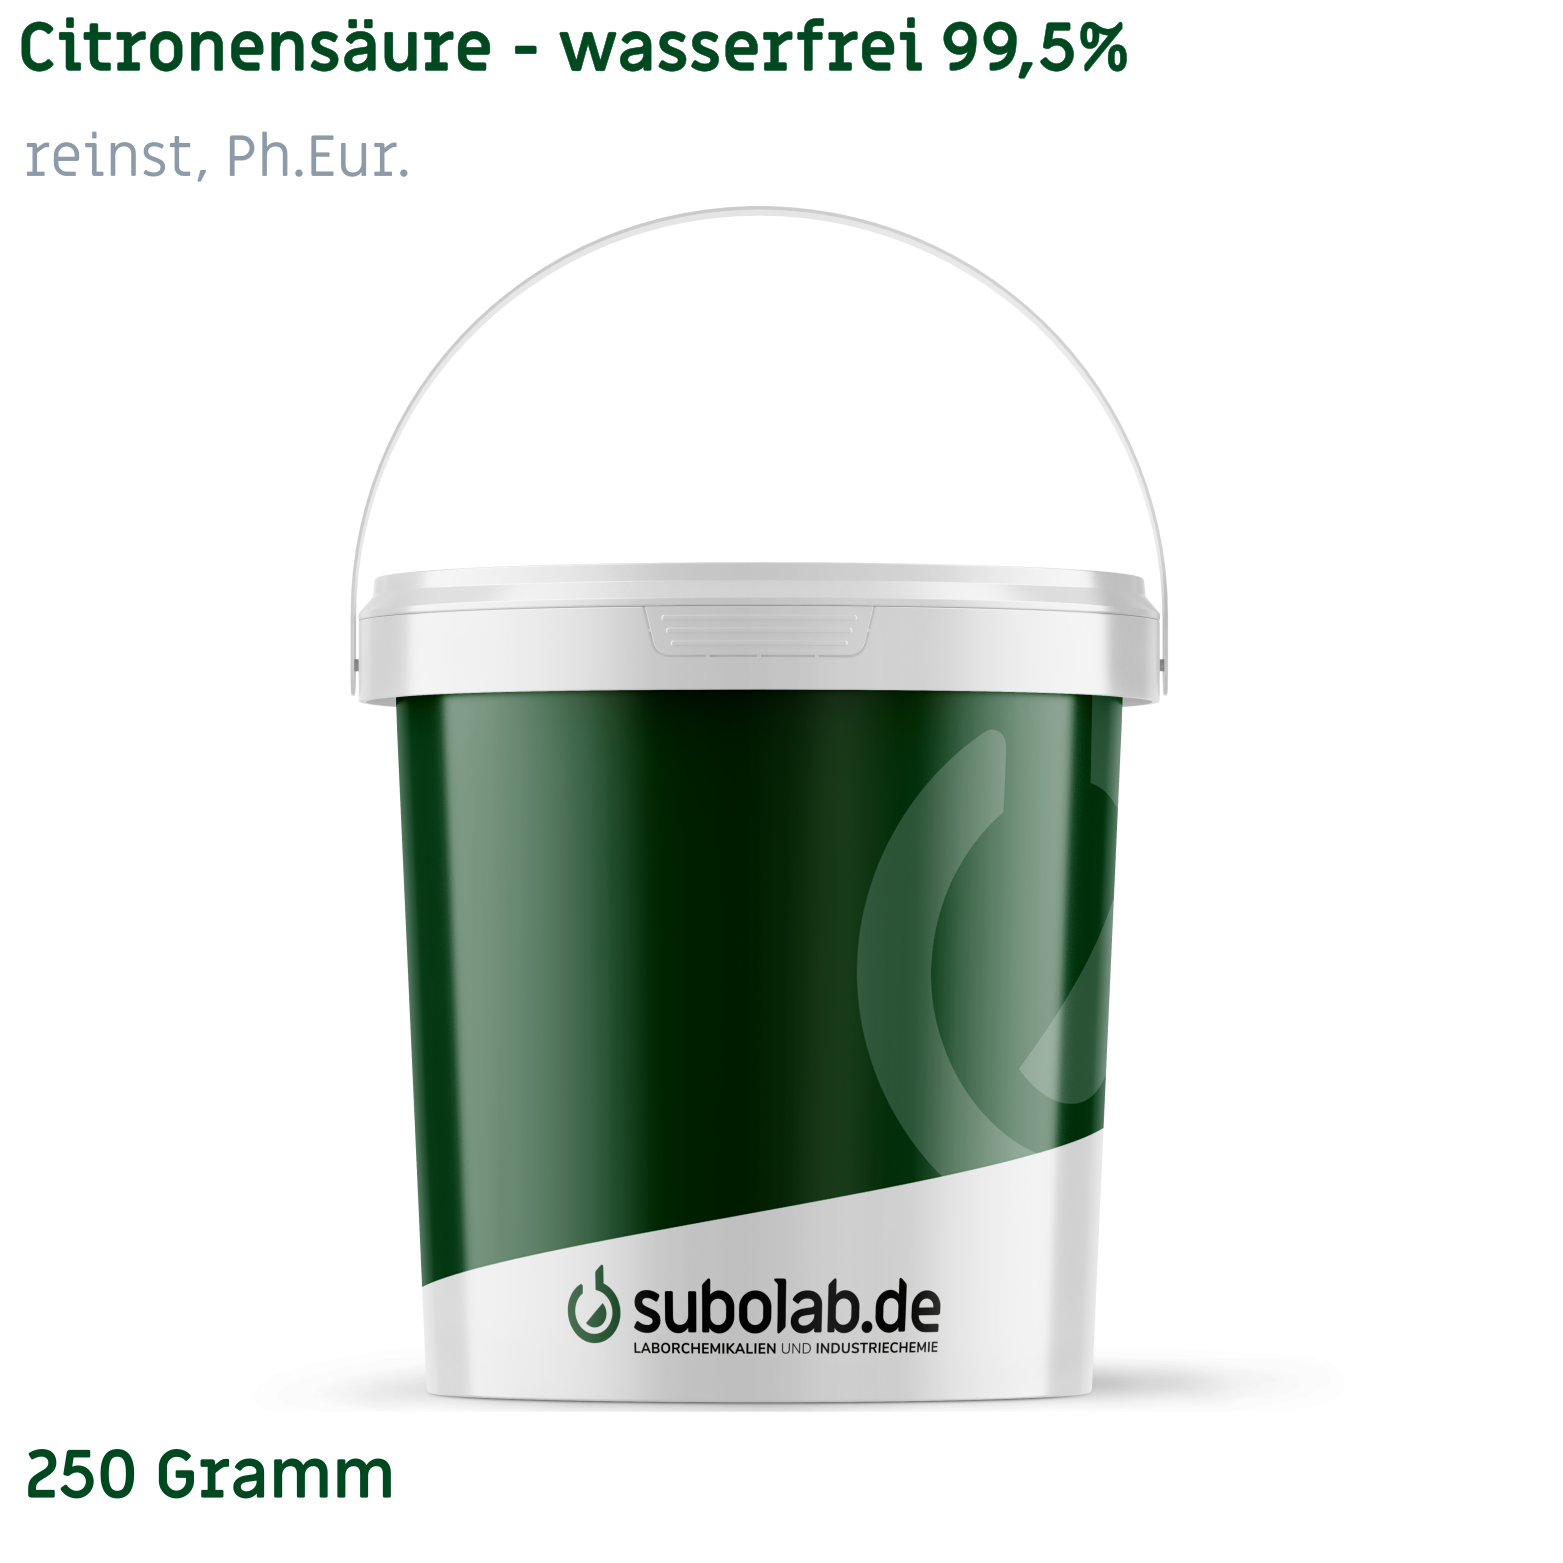 Bild von Citronensäure - wasserfrei 99,5% reinst, Ph.Eur. (250 Gramm)